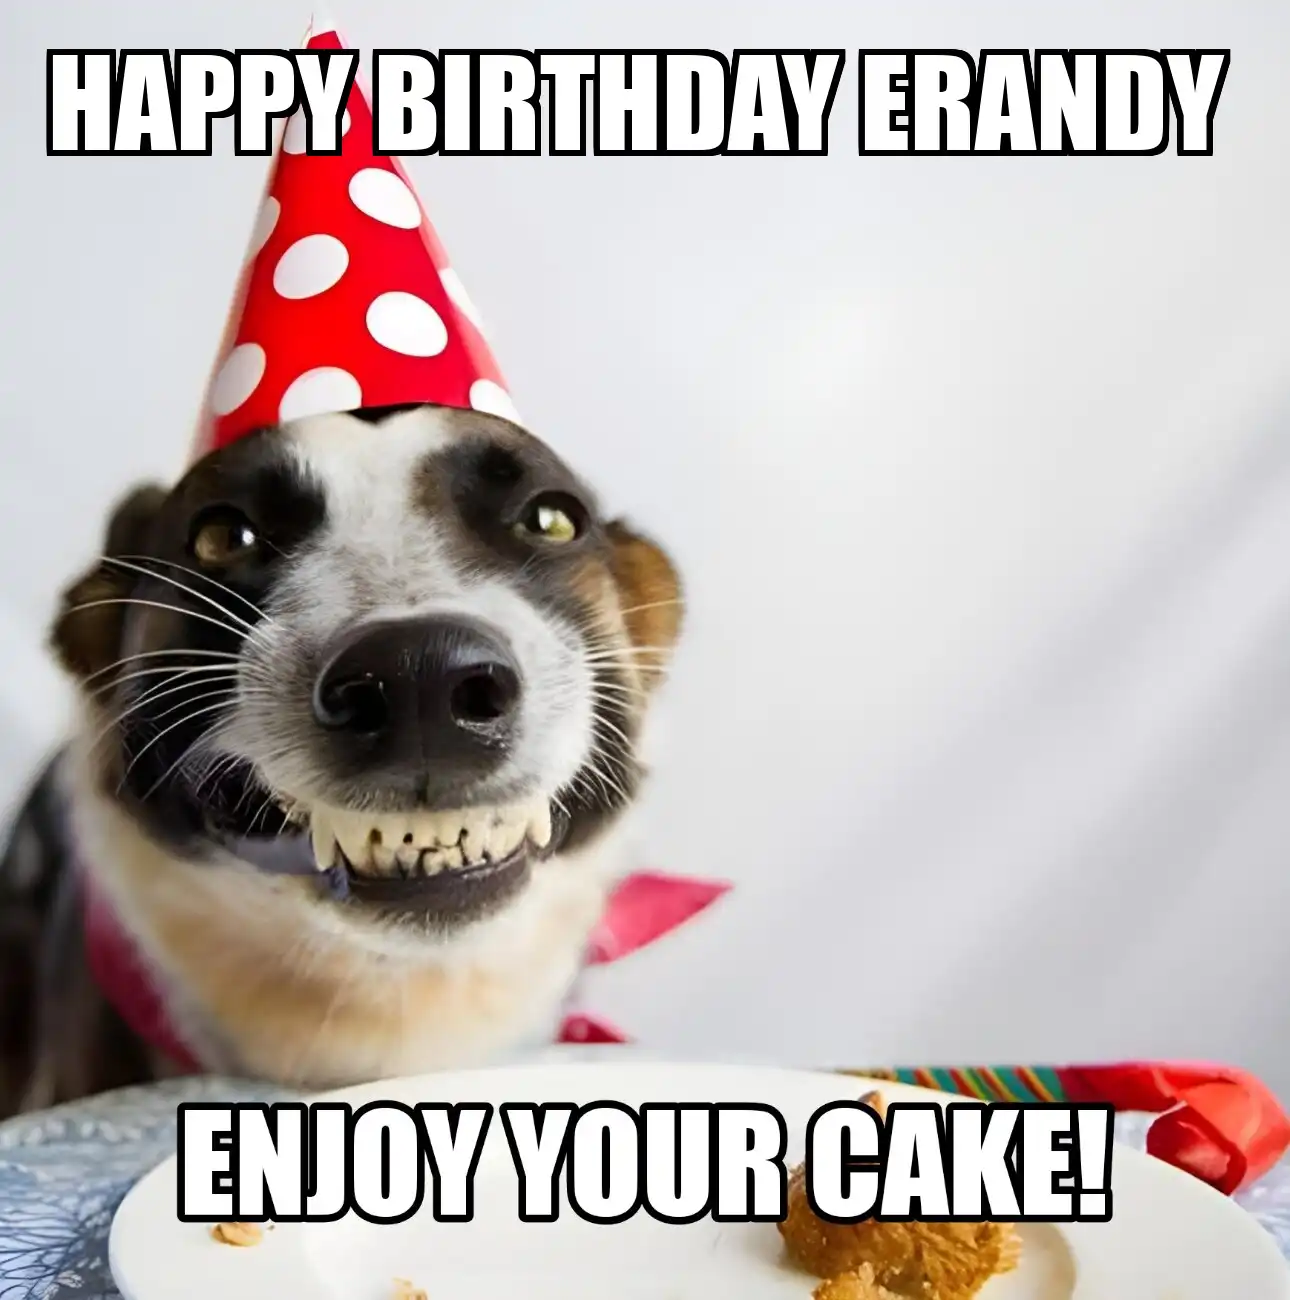 Happy Birthday Erandy Enjoy Your Cake Dog Meme